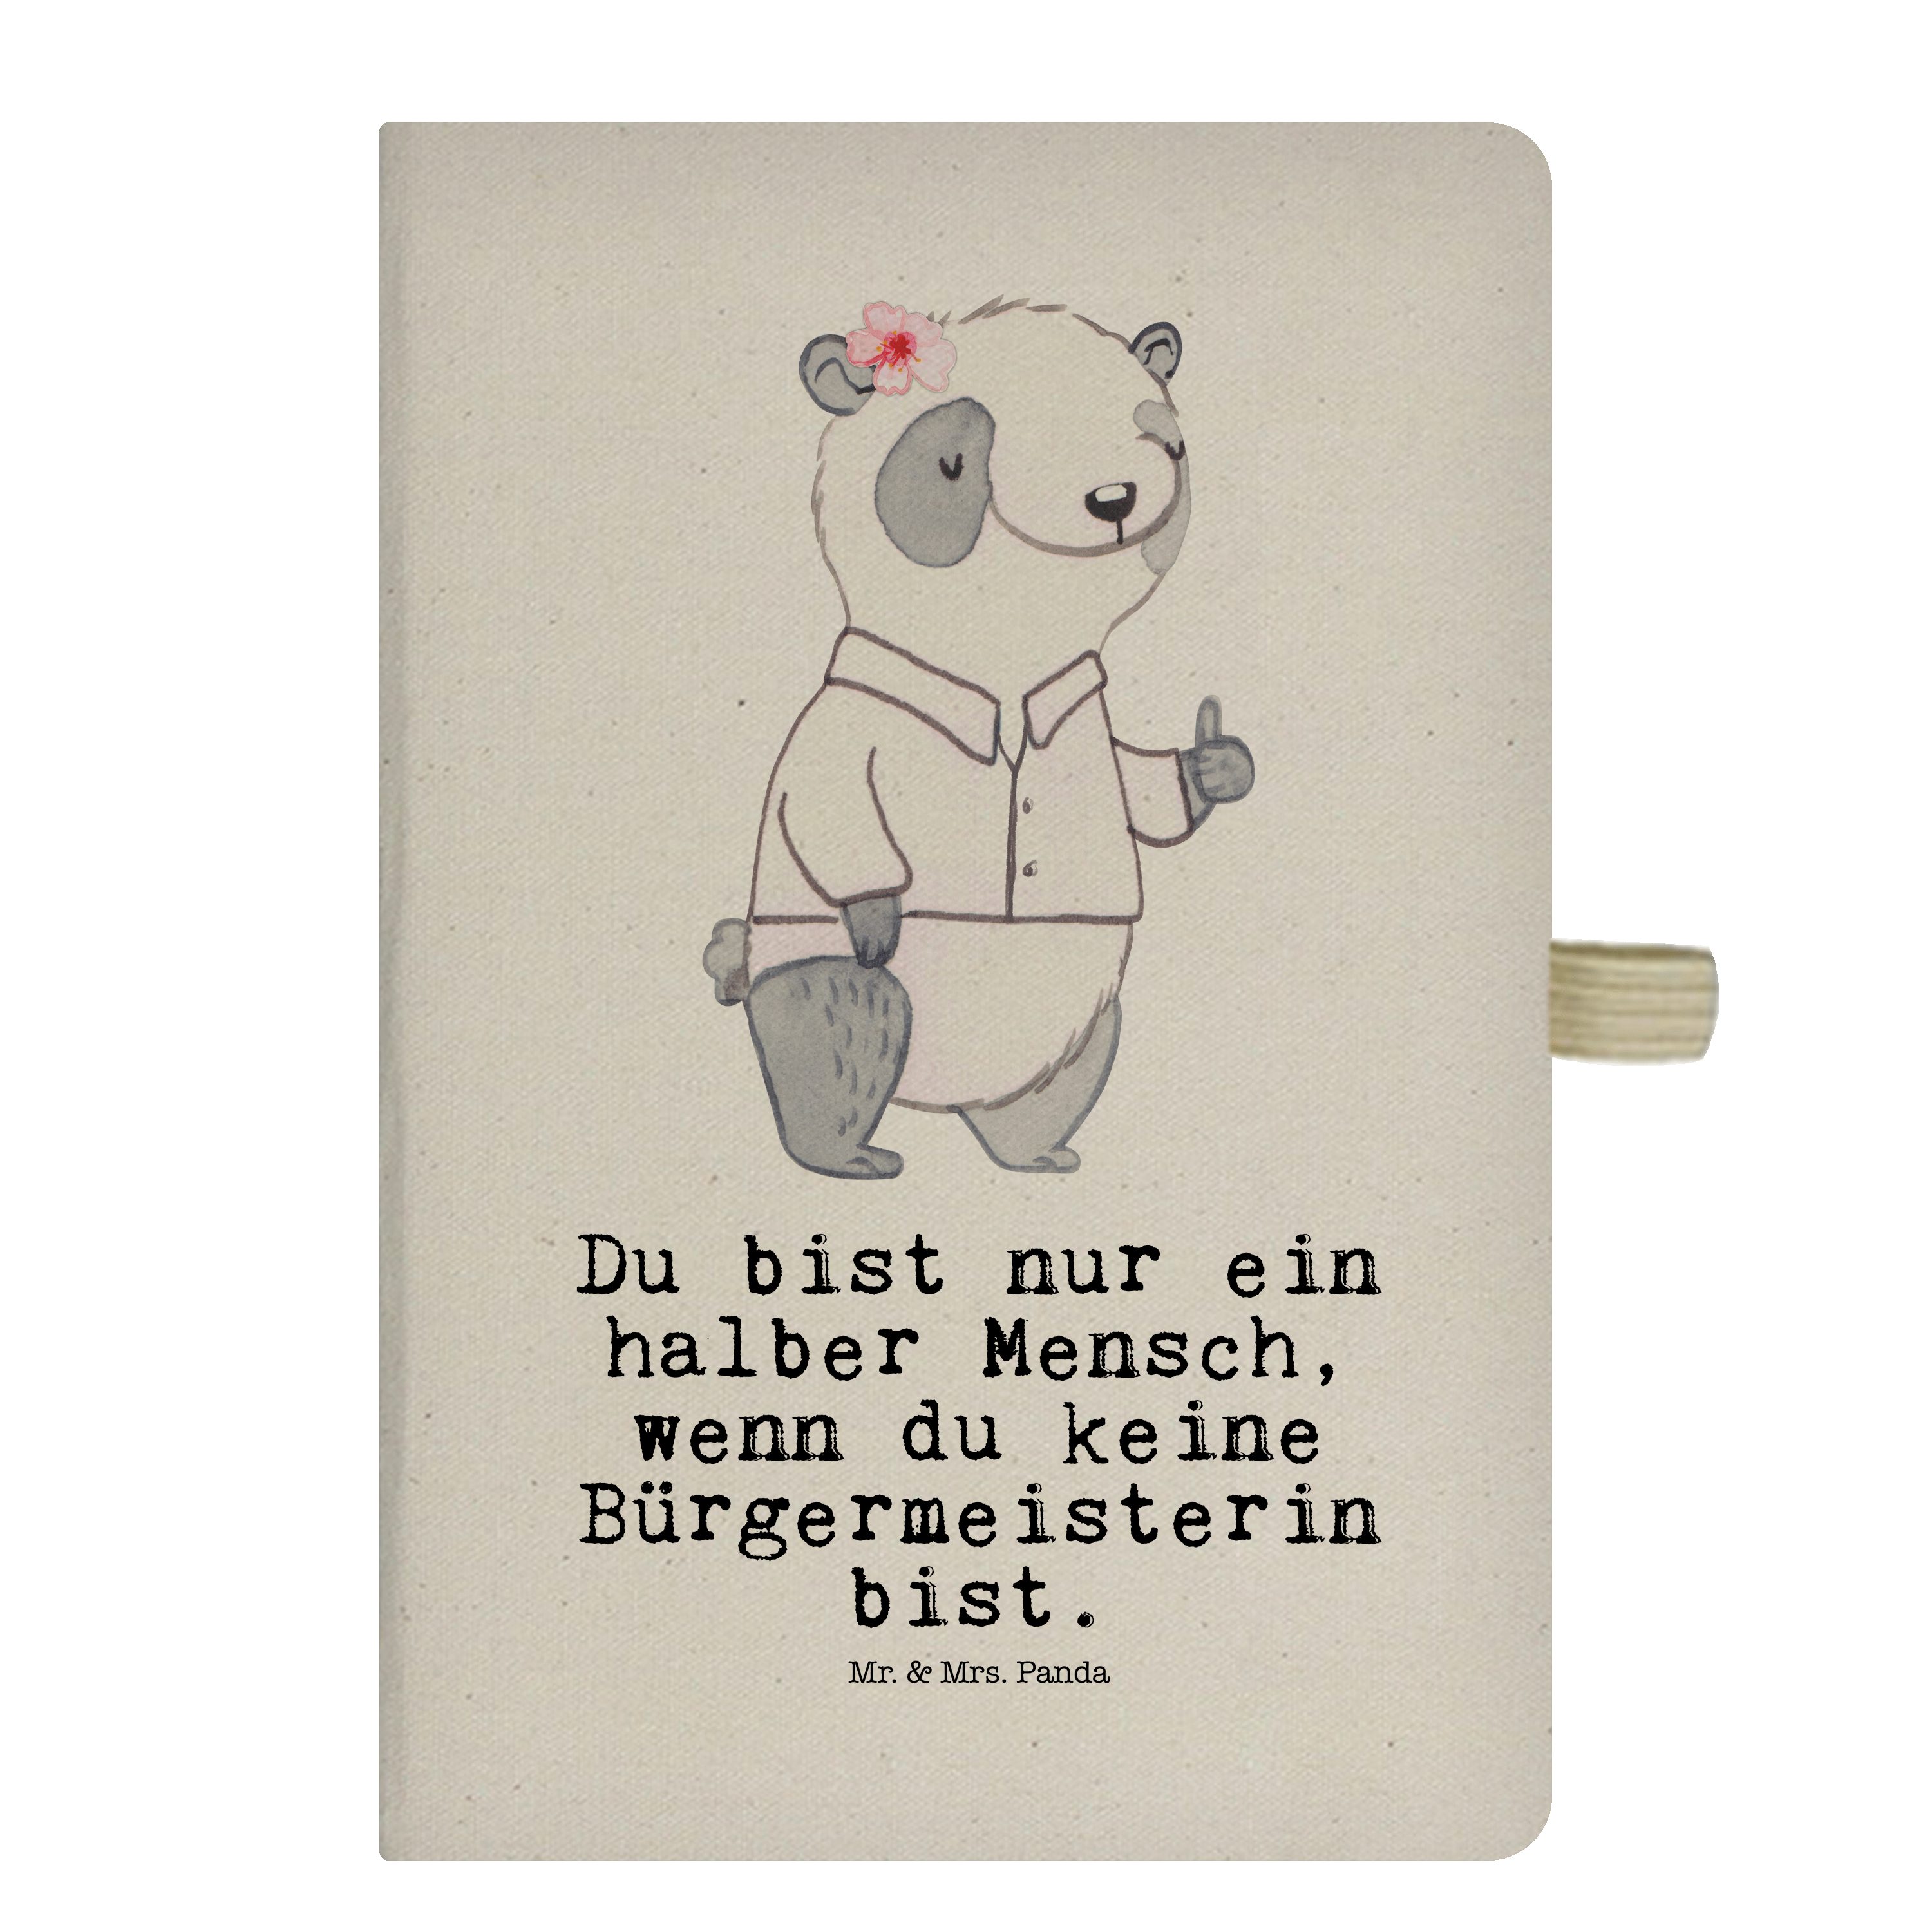 Mr. & Mrs. Panda Notizbuch Bürgermeisterin mit Herz - Transparent - Geschenk, Notizen, Adressbuc Mr. & Mrs. Panda